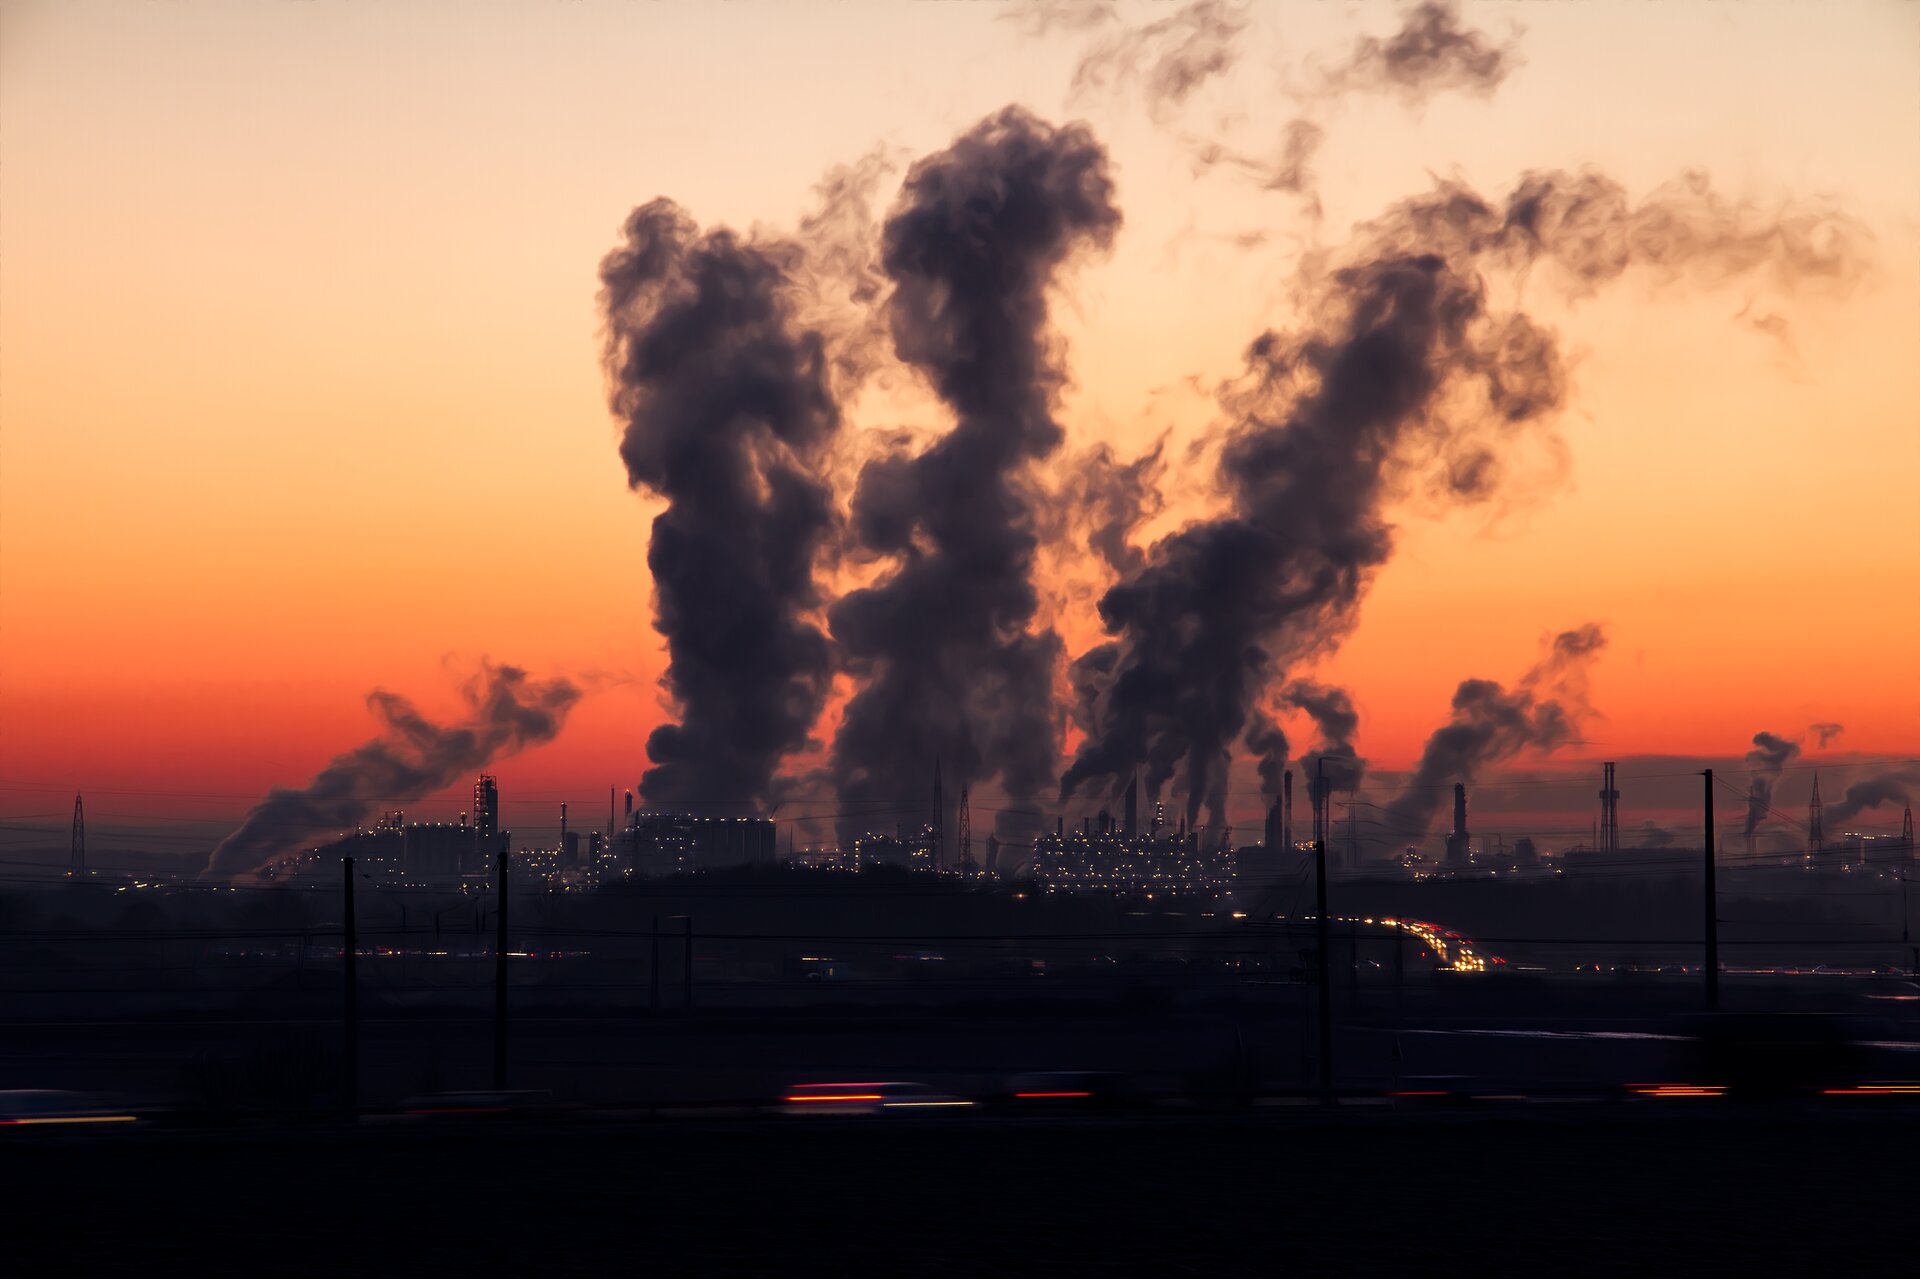 Laut einer neuen Modellstudie sind Luftverschmutzung durch die Nutzung fossiler Brennstoffe für über 5 Millionen zusätzliche Todesfälle pro Jahr verantwortlich